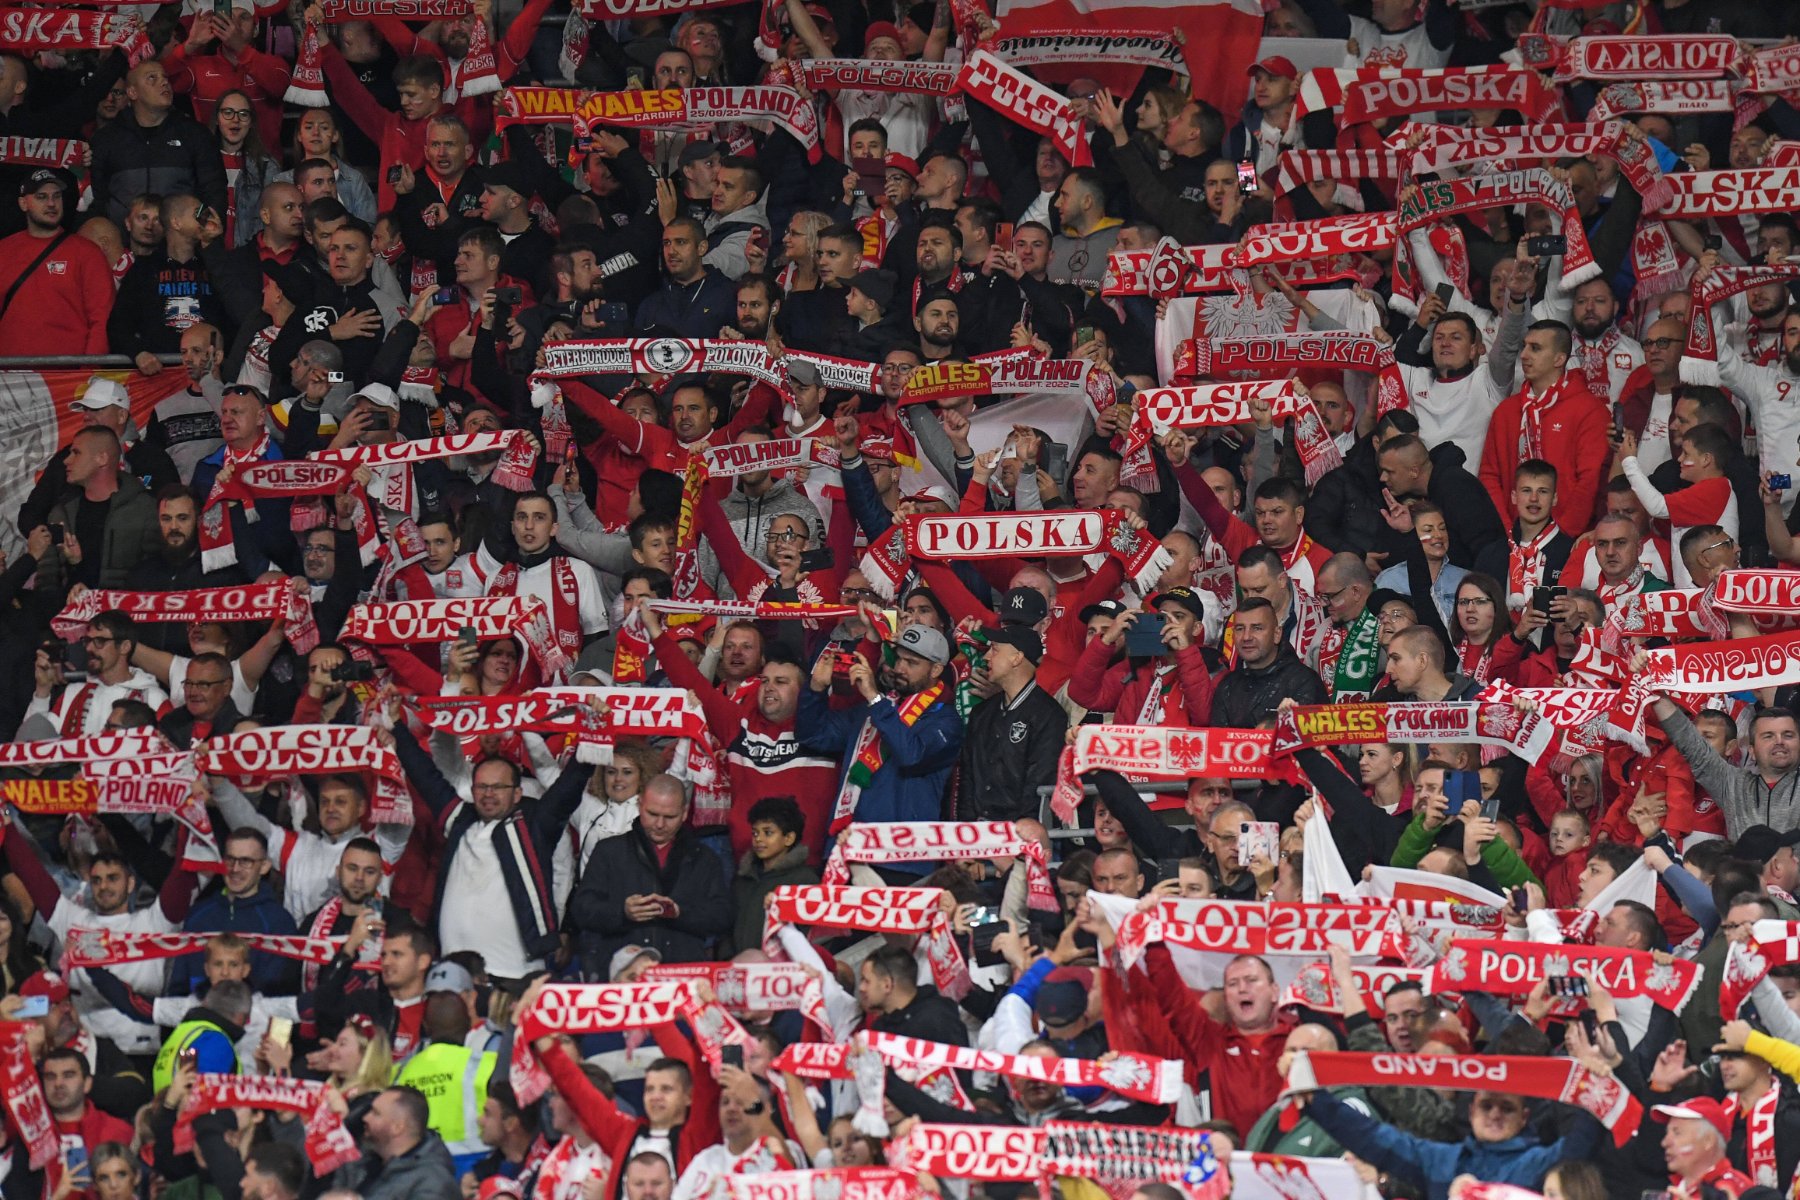 Polen-Fans während des Spiels der UEFA Nations League Gruppe A4 zwischen Wales und Polen im Cardiff City Stadium, Cardiff